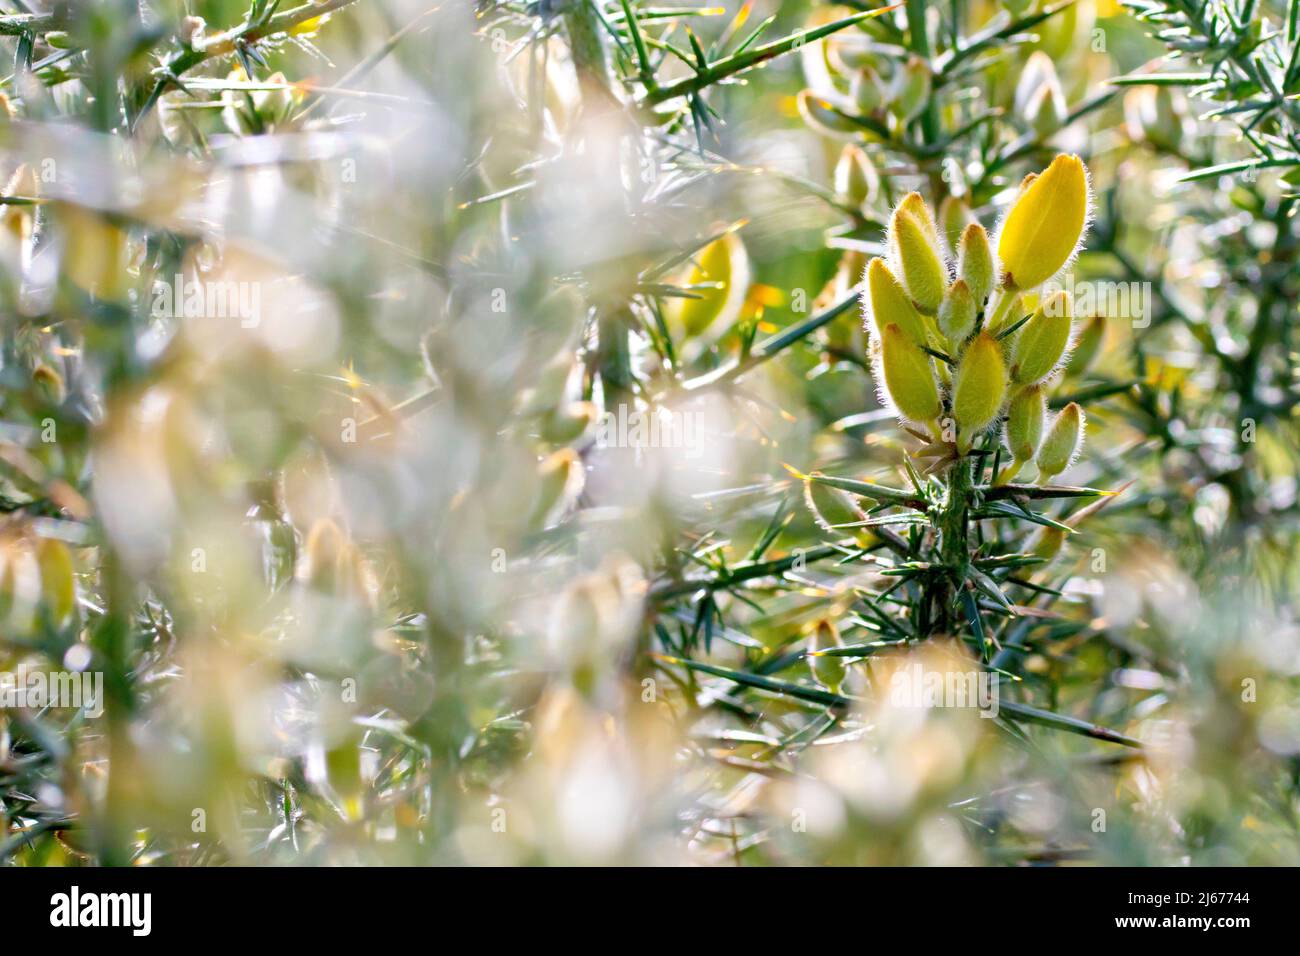 Gorse (ulex europaeus), anche noto come Furze o Whin, dietro illuminato da vicino che mostra le gemme di fiori gialle pelose e le spine affilate dell'arbusto. Foto Stock